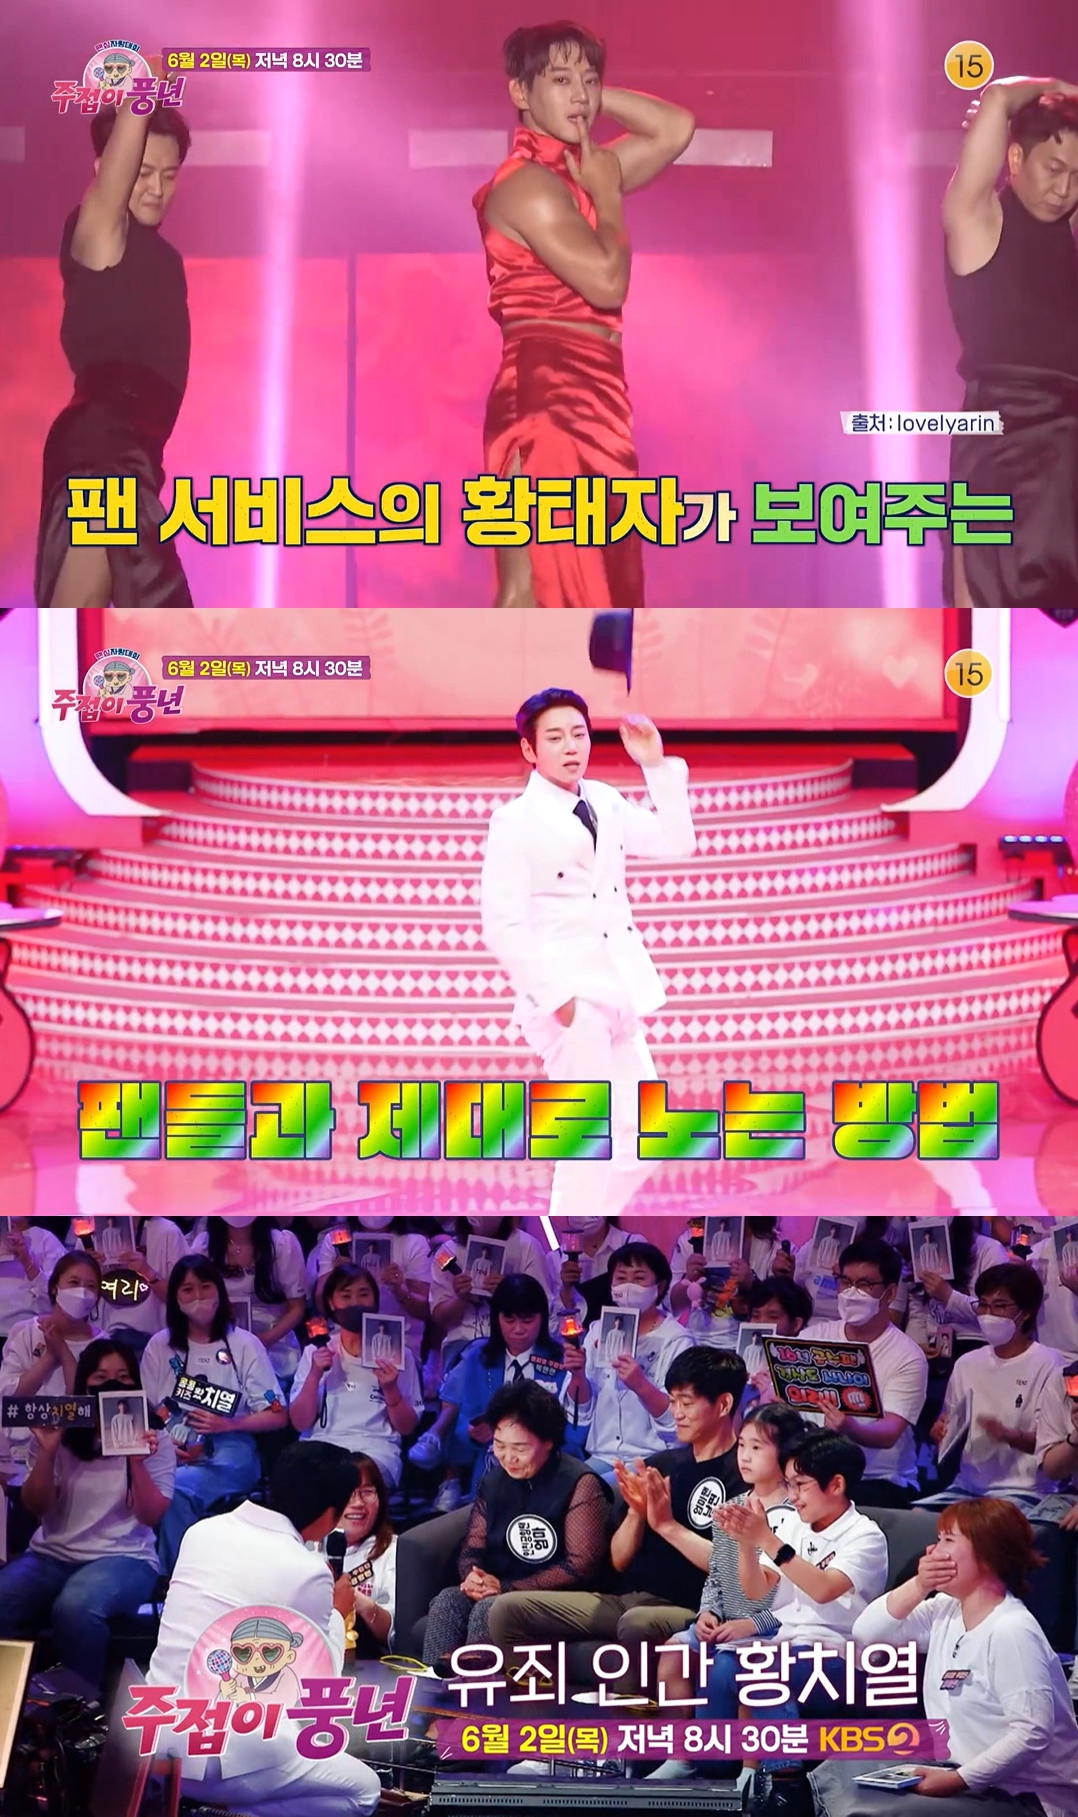 사진= KBS 2TV '팬심자랑대회 주접이 풍년' (이하 주접이 풍년') 방송화면 캡쳐